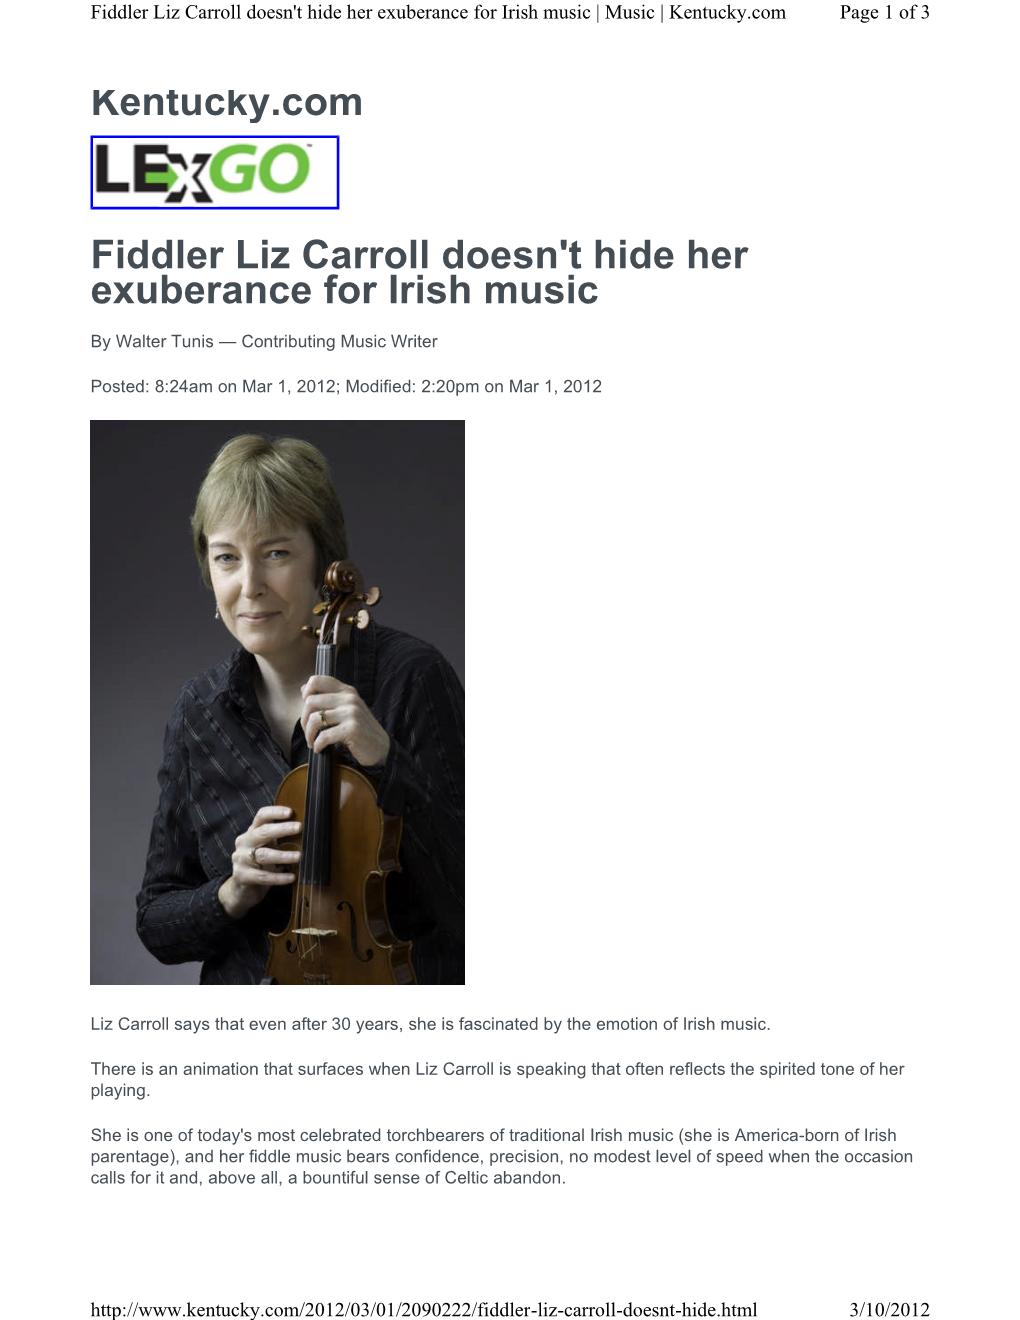 Kentucky.Com Fiddler Liz Carroll Doesn't Hide Her Exuberance For